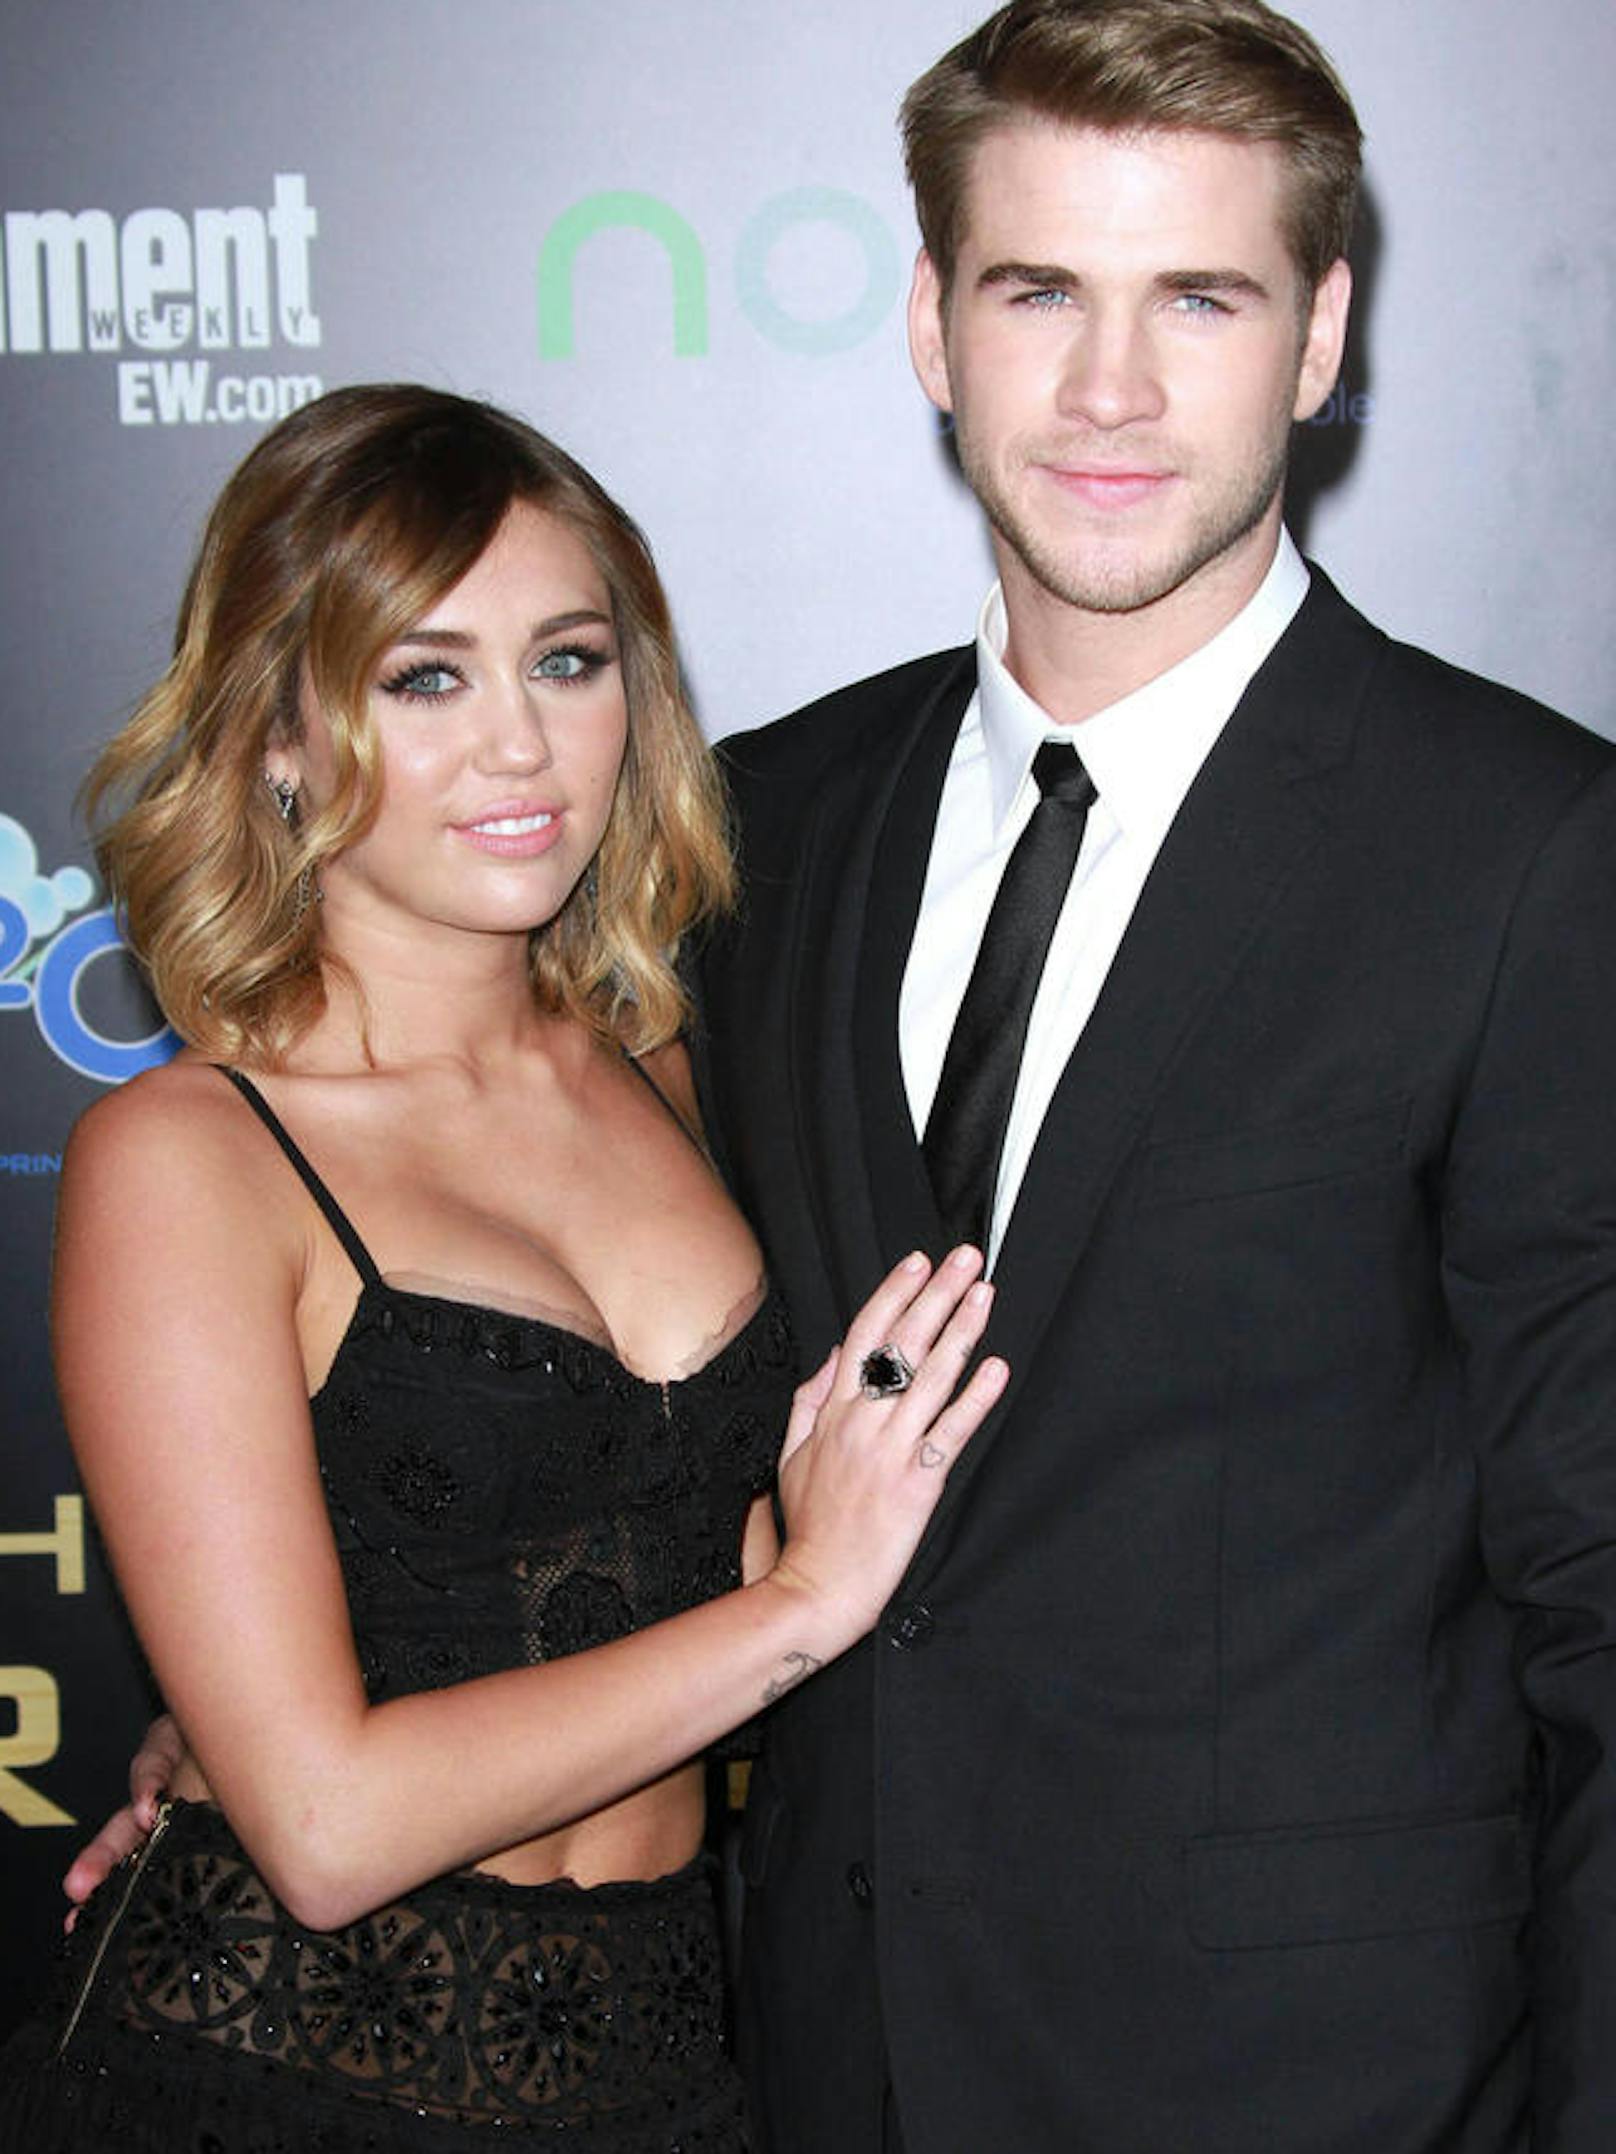 Miley Cyrus und Liam Hemsworth bei der Premiere von "The Hunger Games" in Los Angeles 